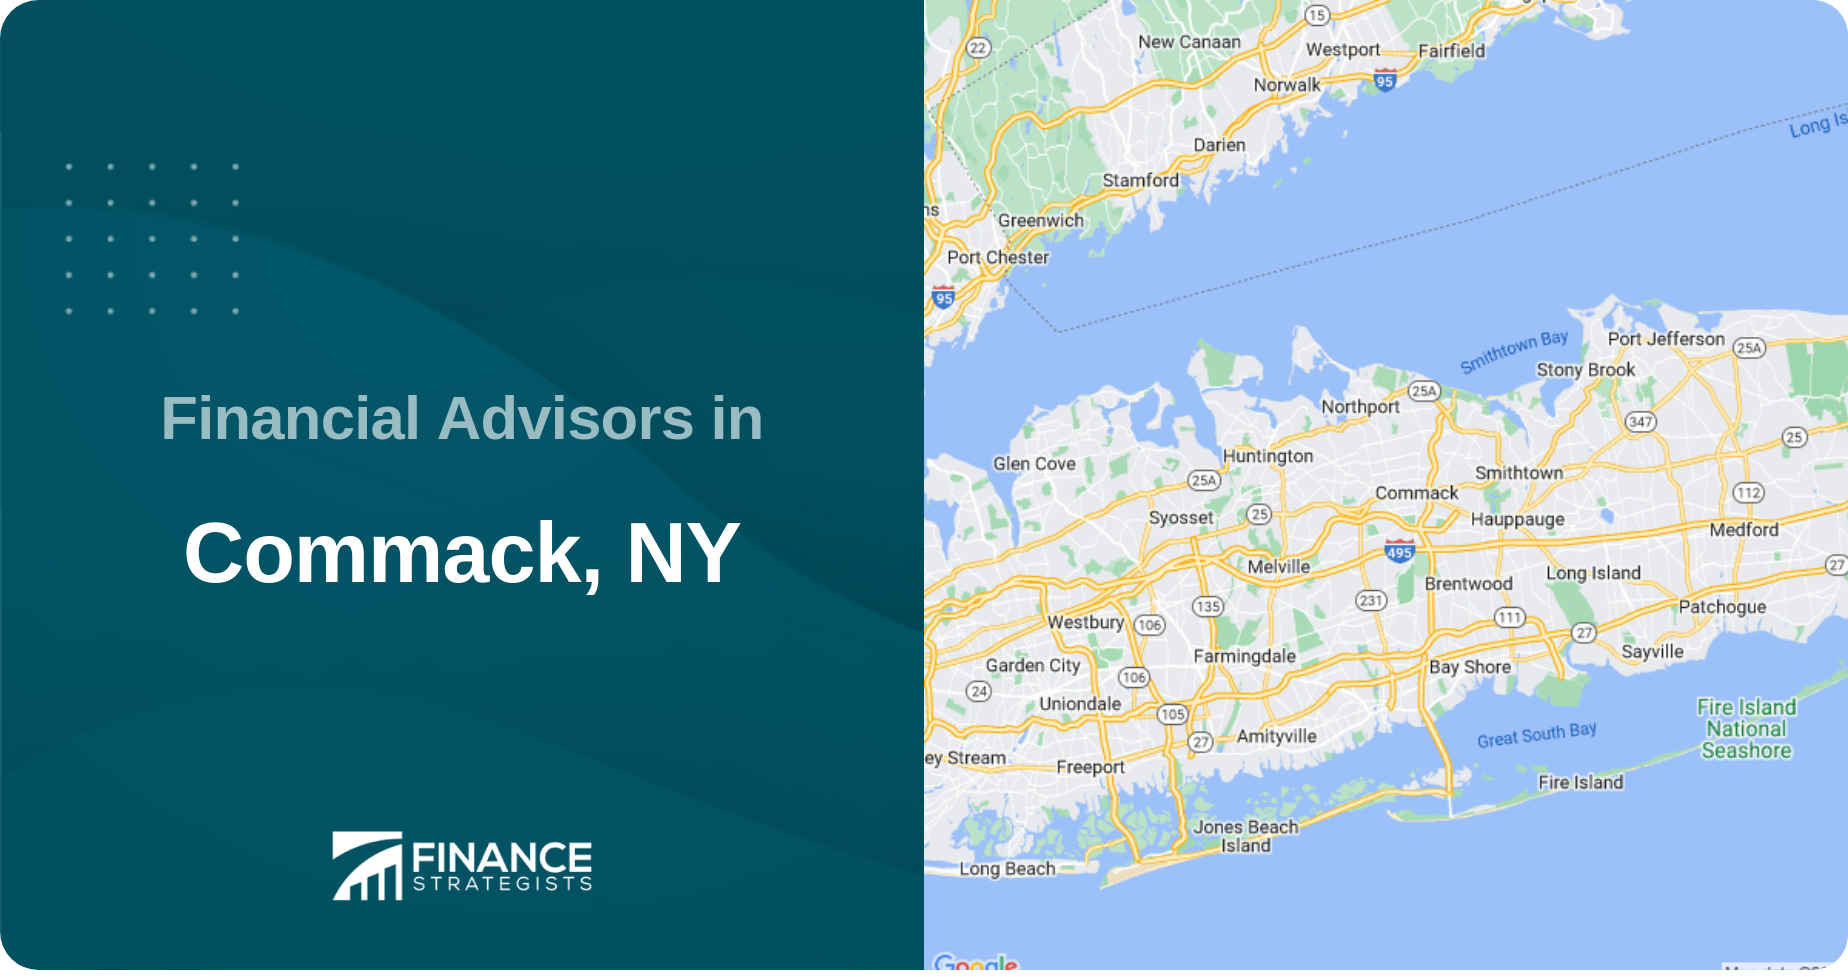 Financial Advisors in Commack, NY